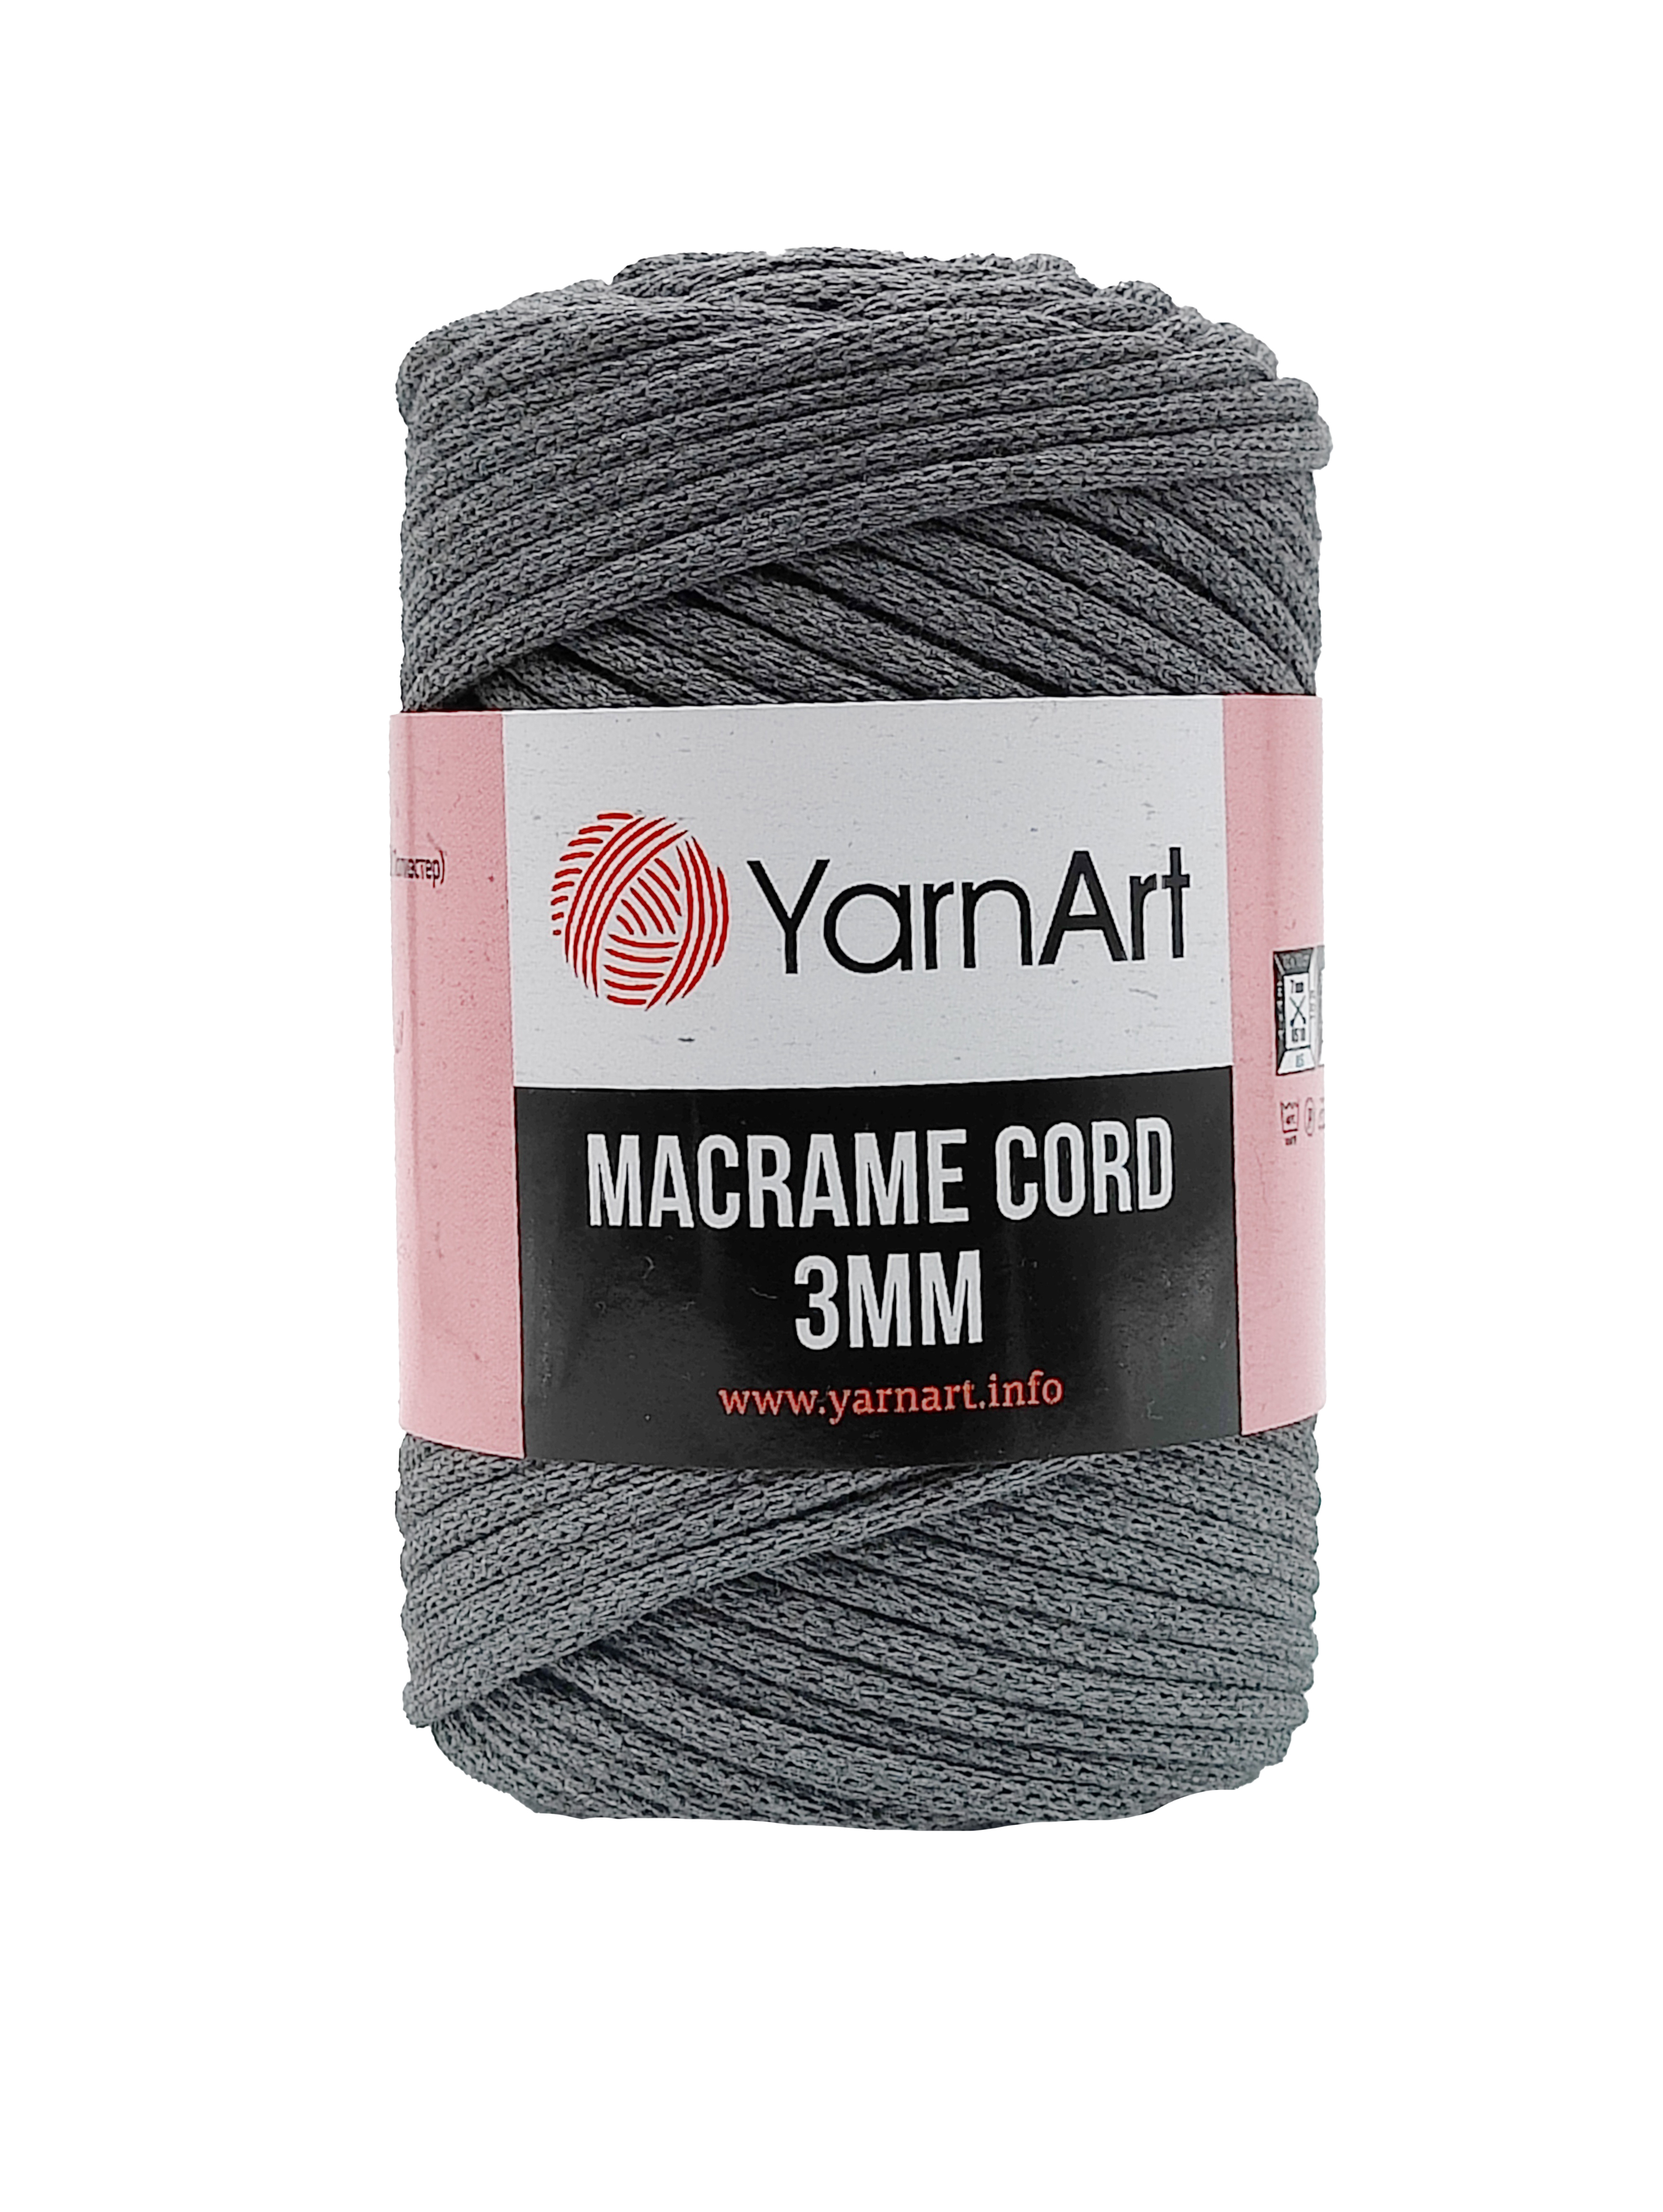 YarnArt Macrame Cord